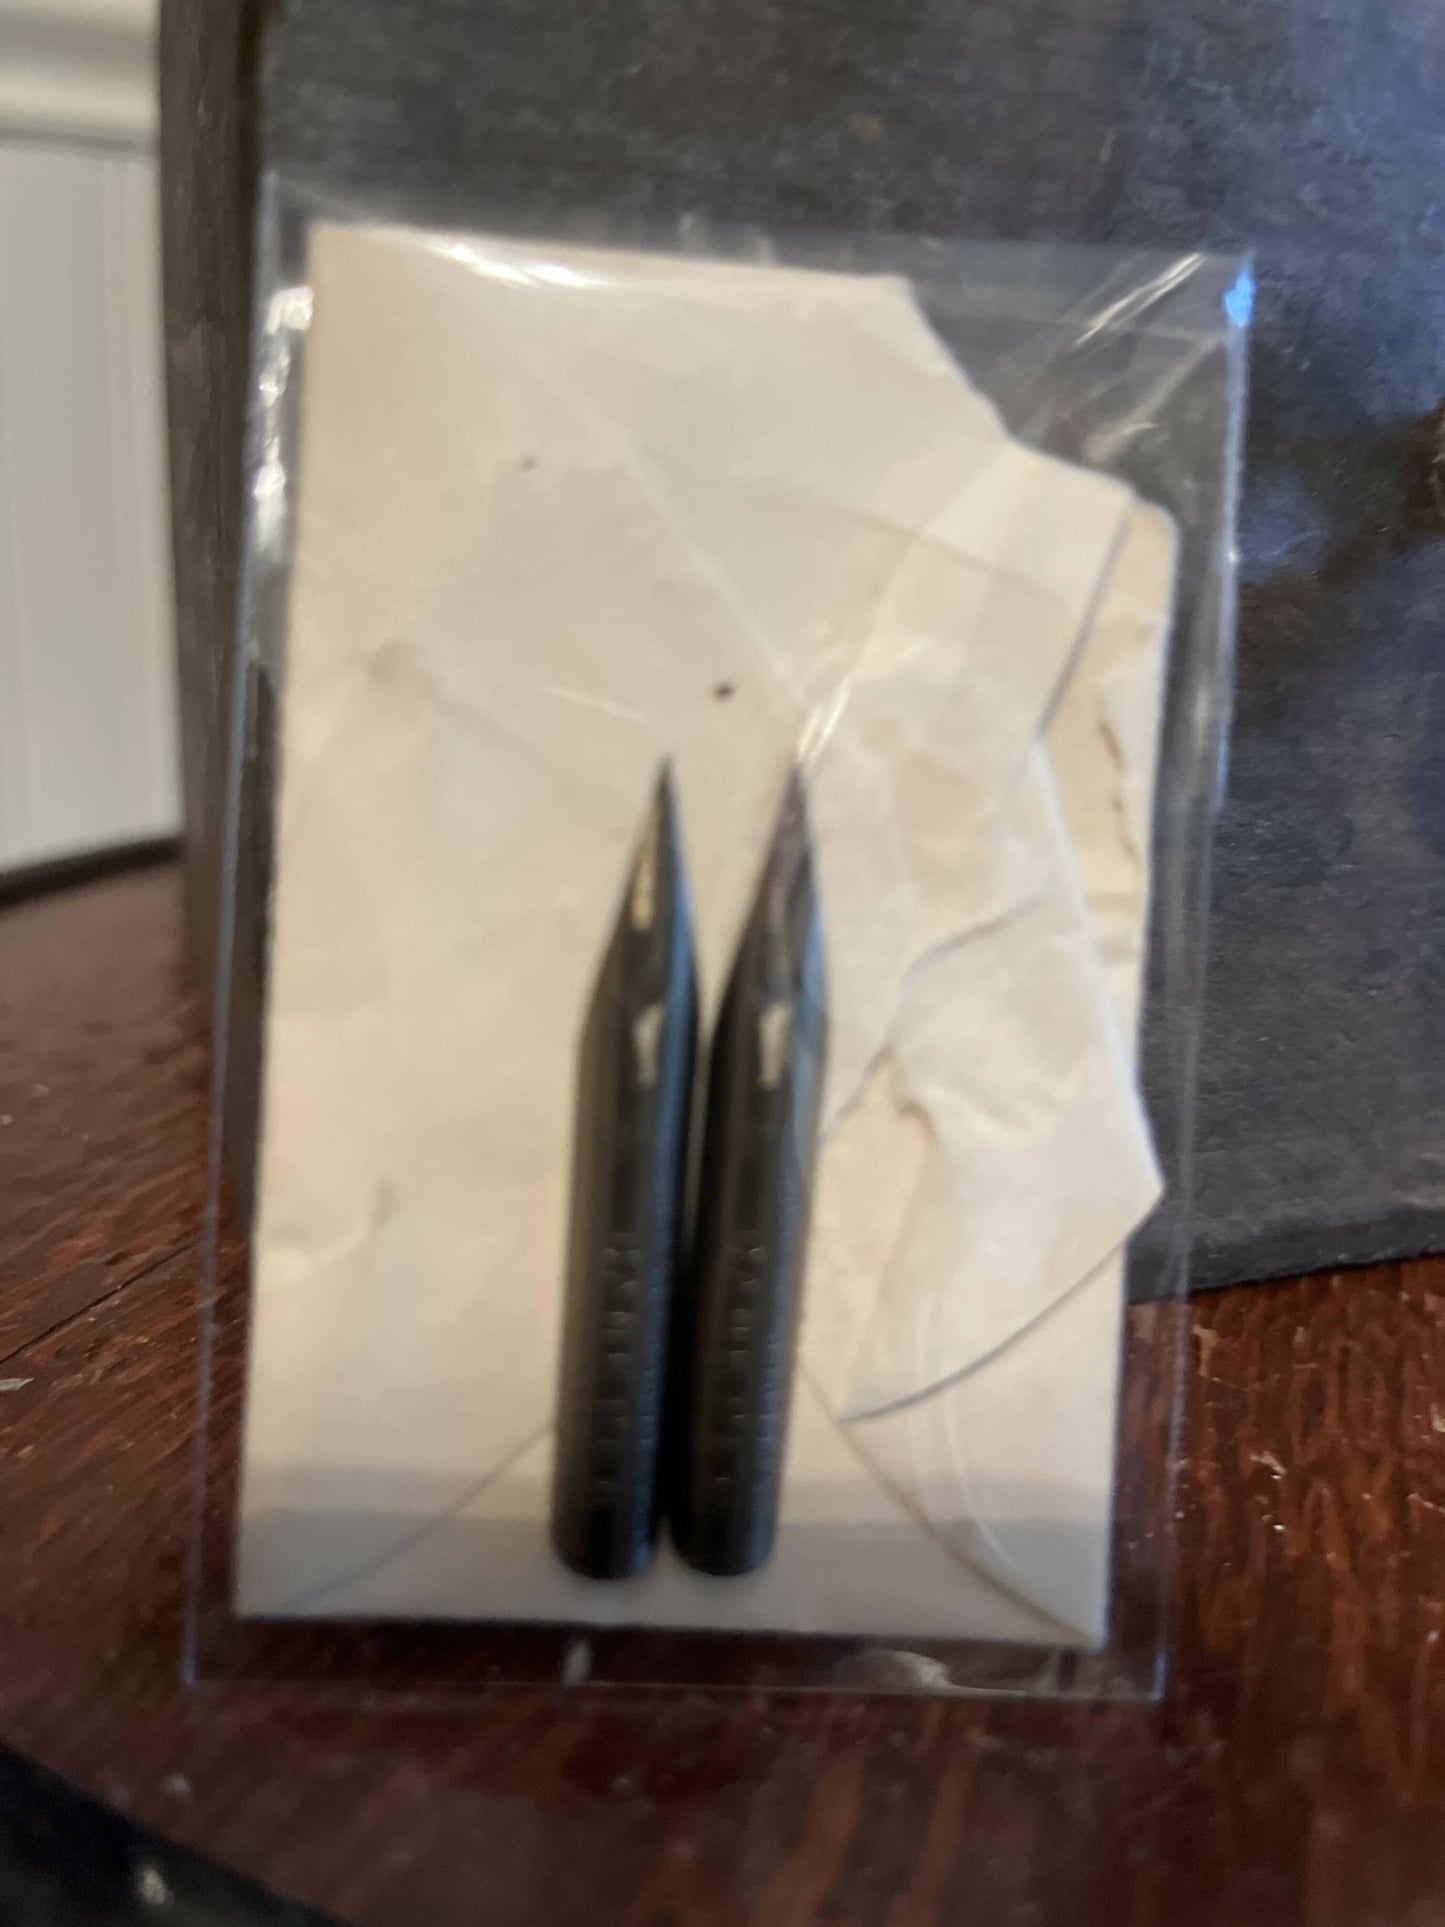 Vintage Metal Fountain Pen Nibs (set of 2)